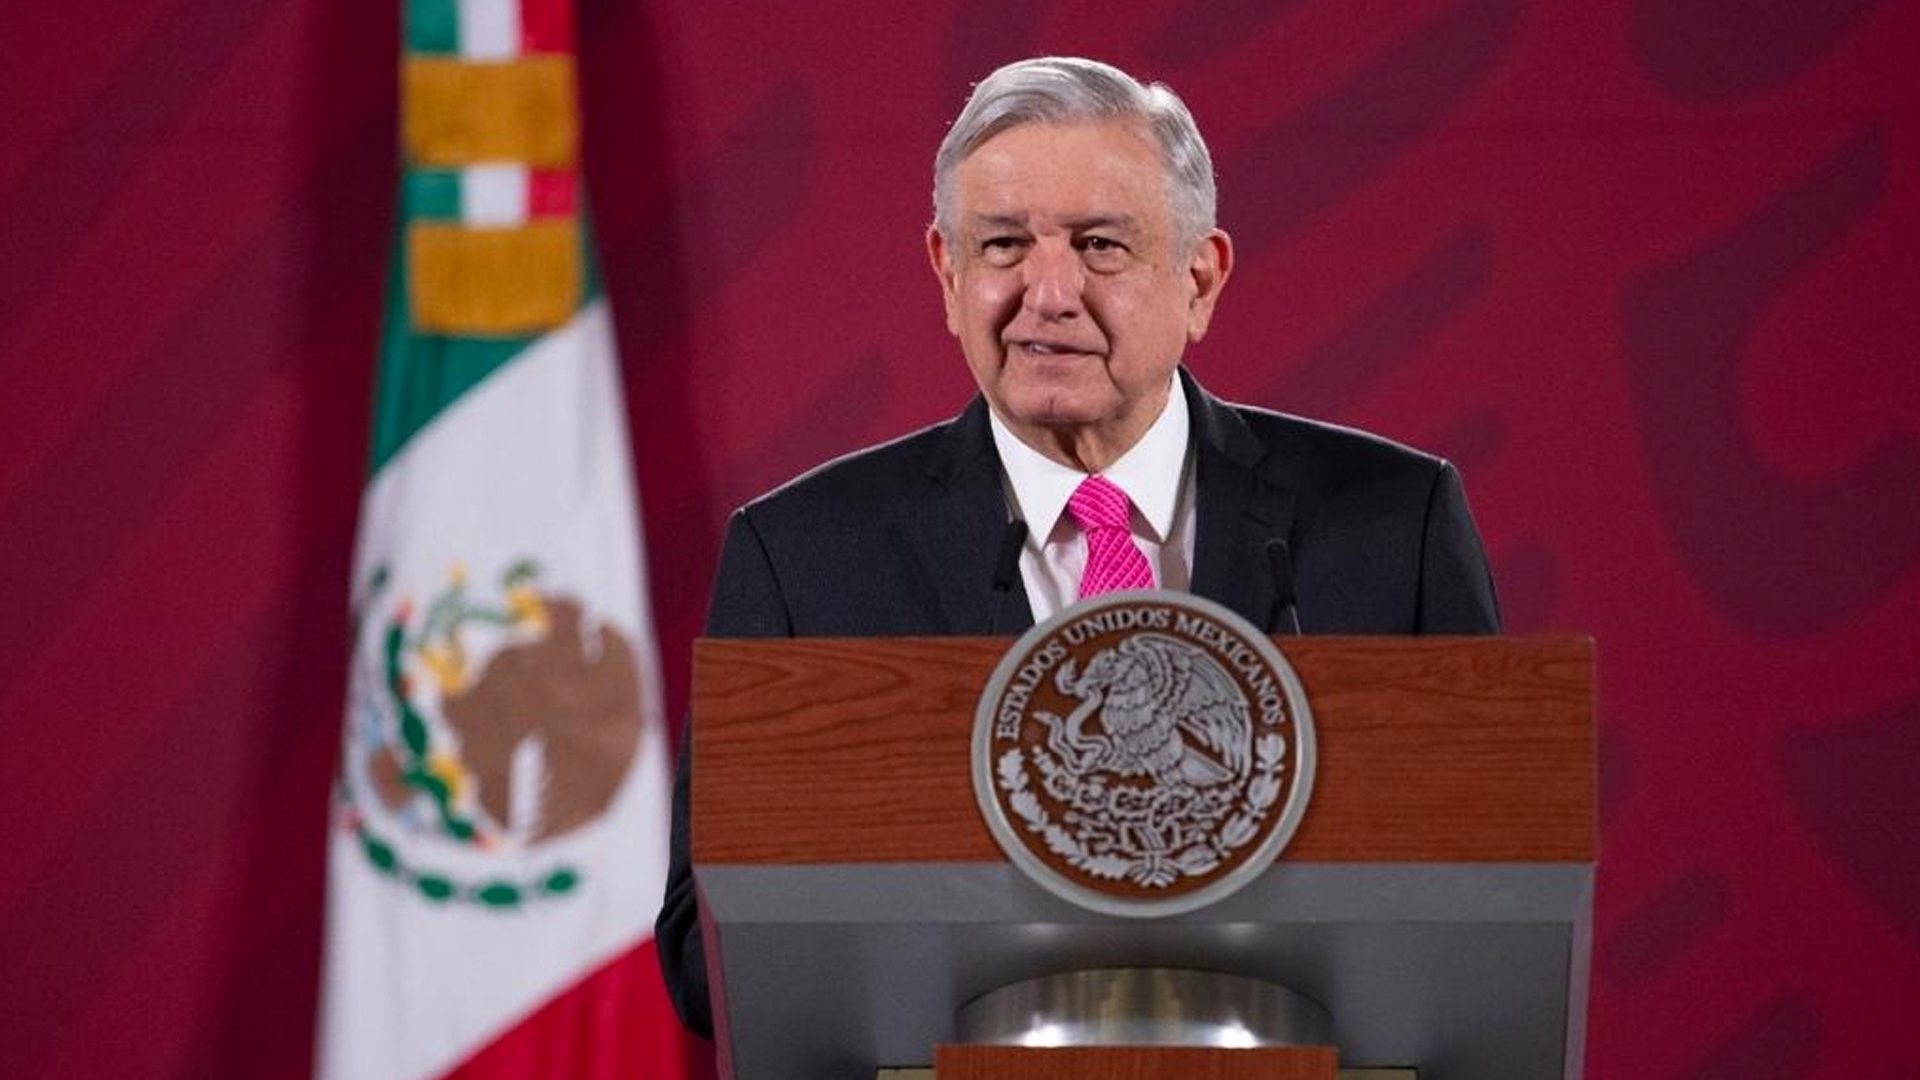 El presidente de México ha sido increpado por no hacer más acciones para apoyar este sector. (Foto: Presidencia de México)